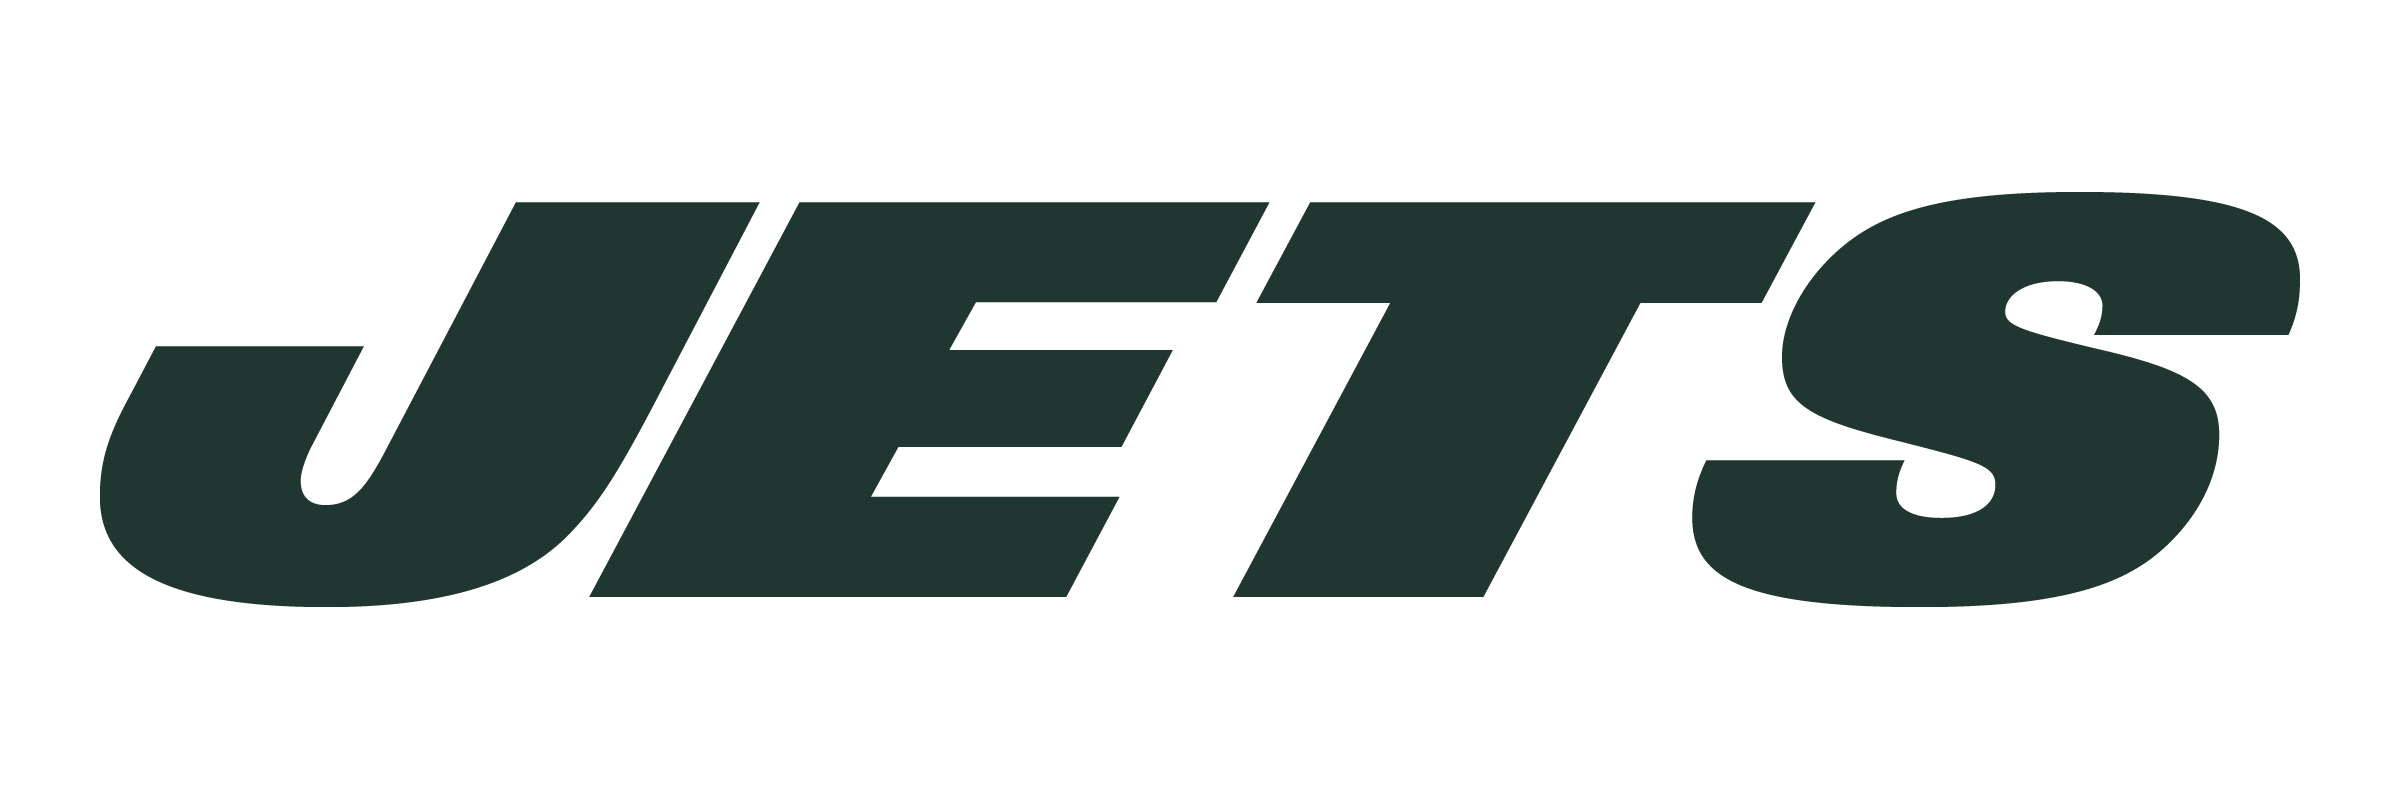 Jets Football Logo - New York Jets Logo PNG Transparent & SVG Vector